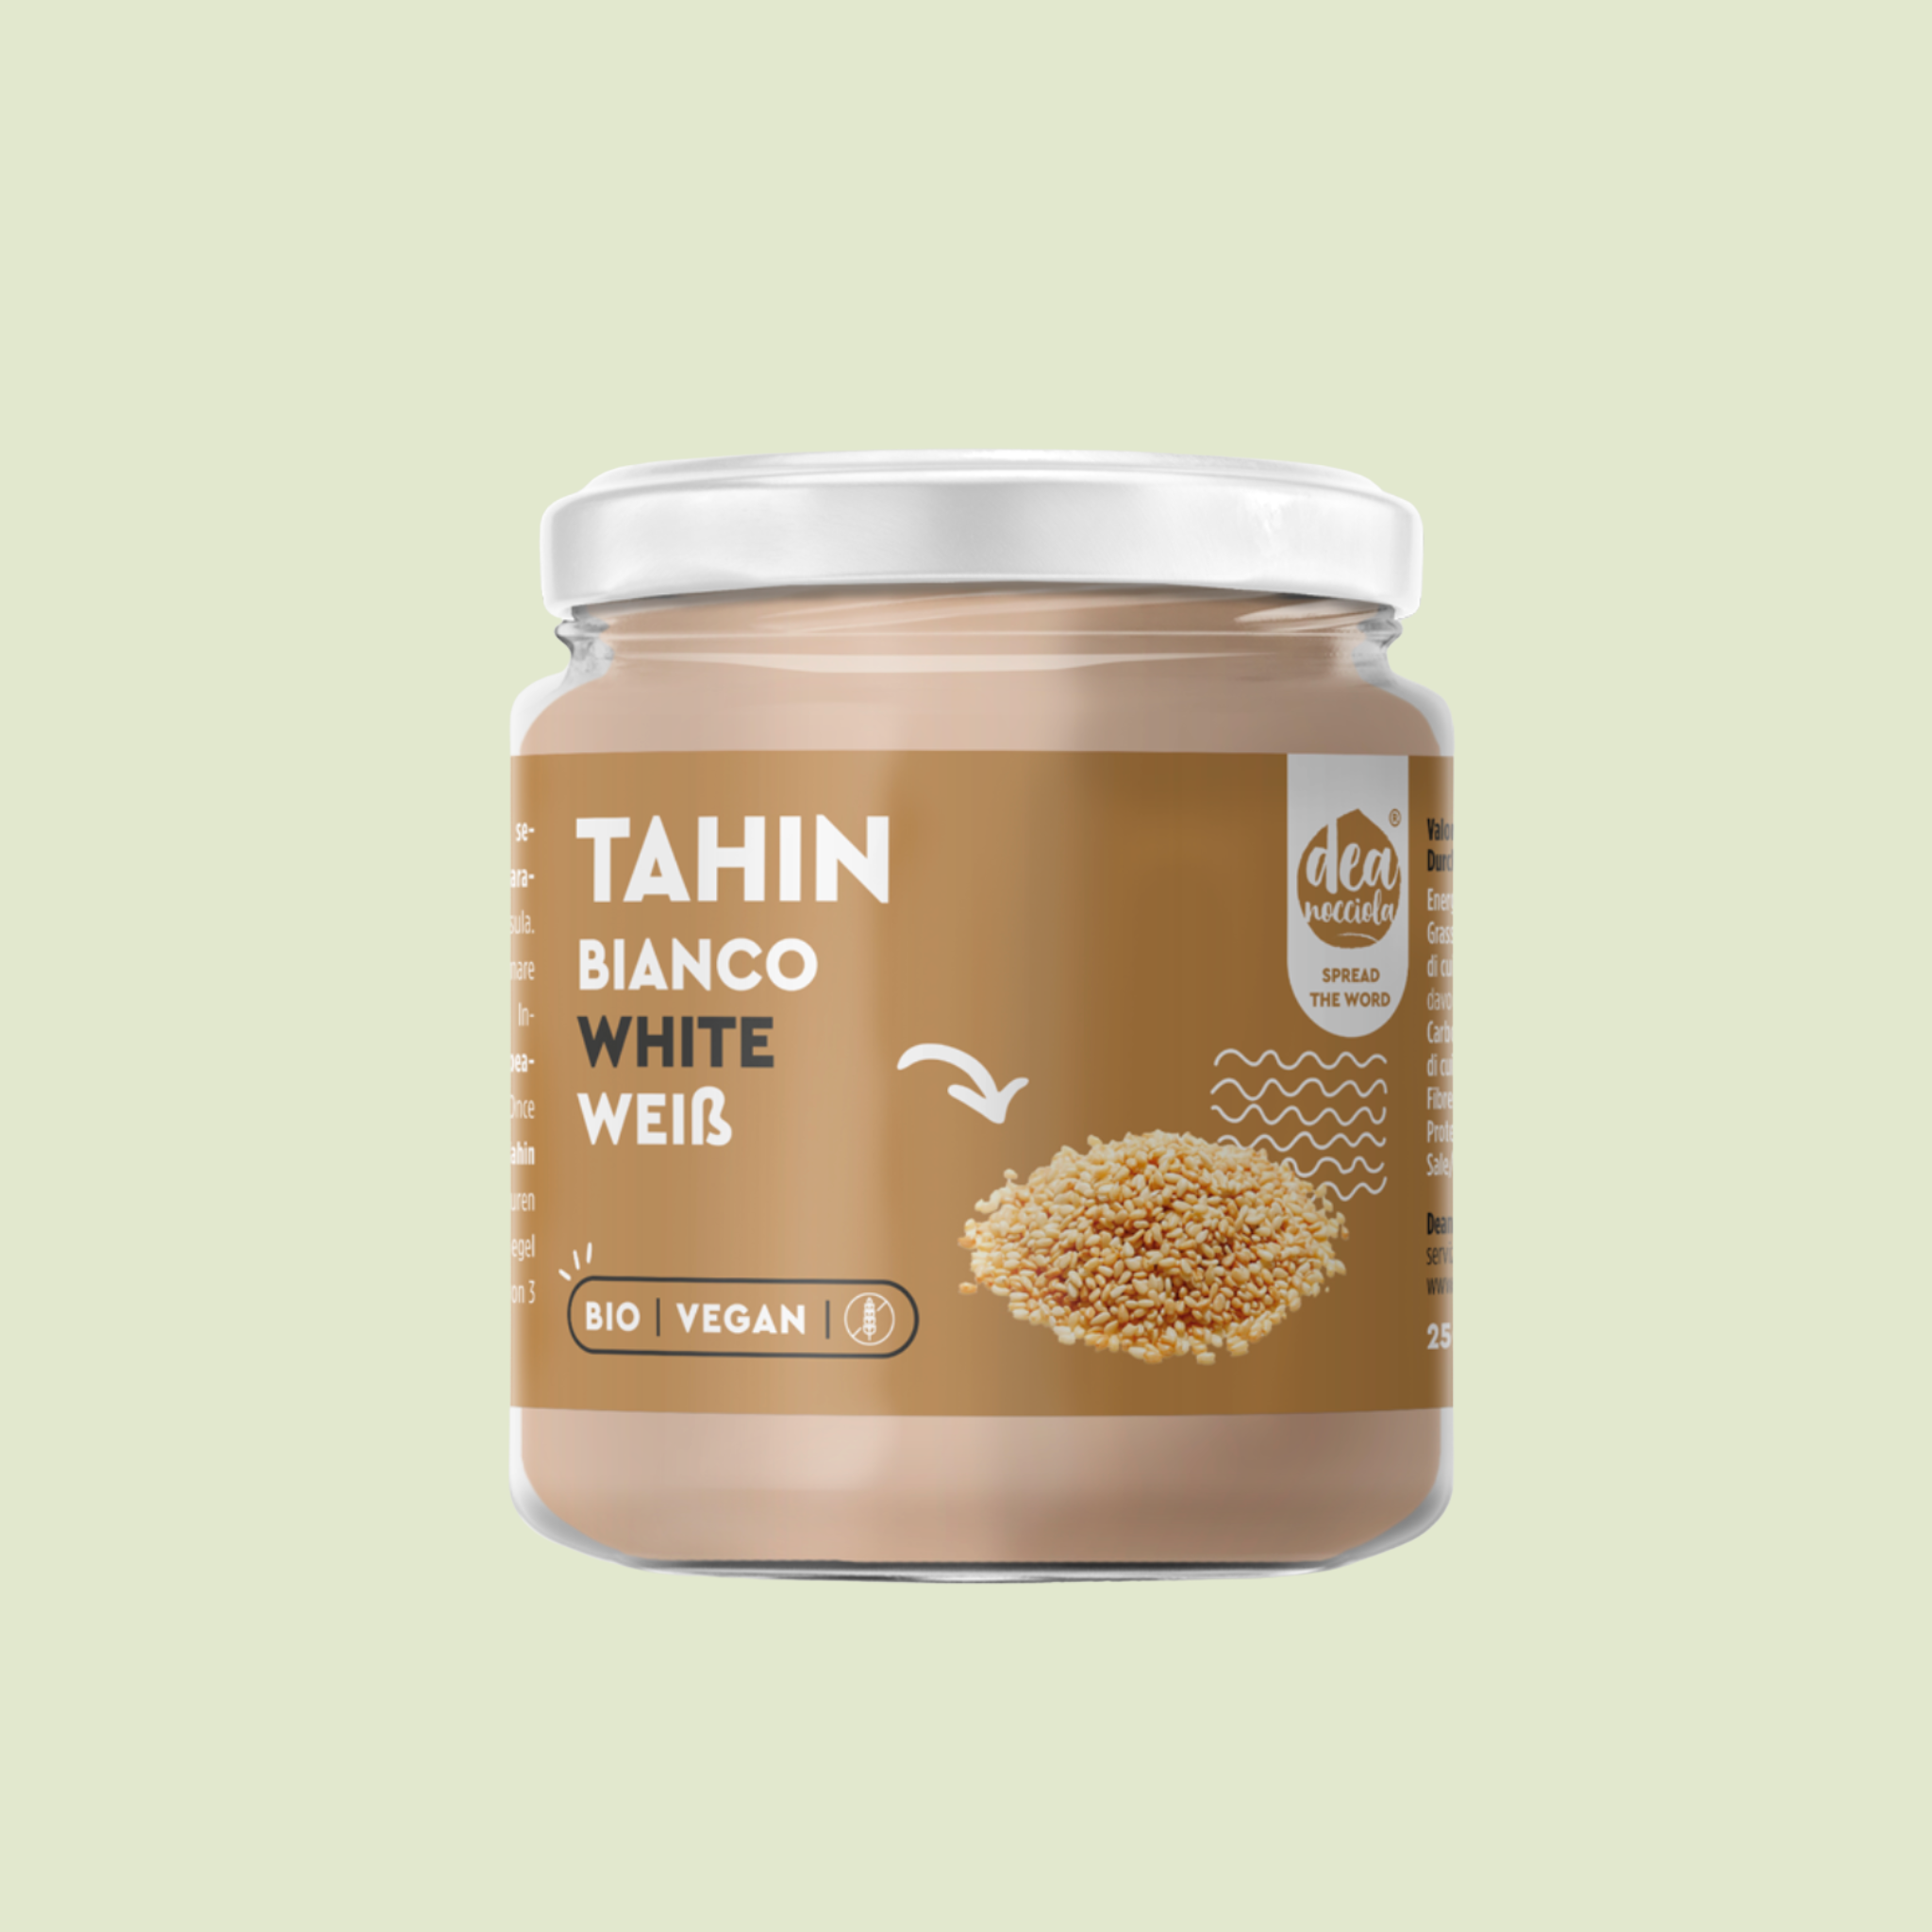 Tahin - Crema di Sesamo